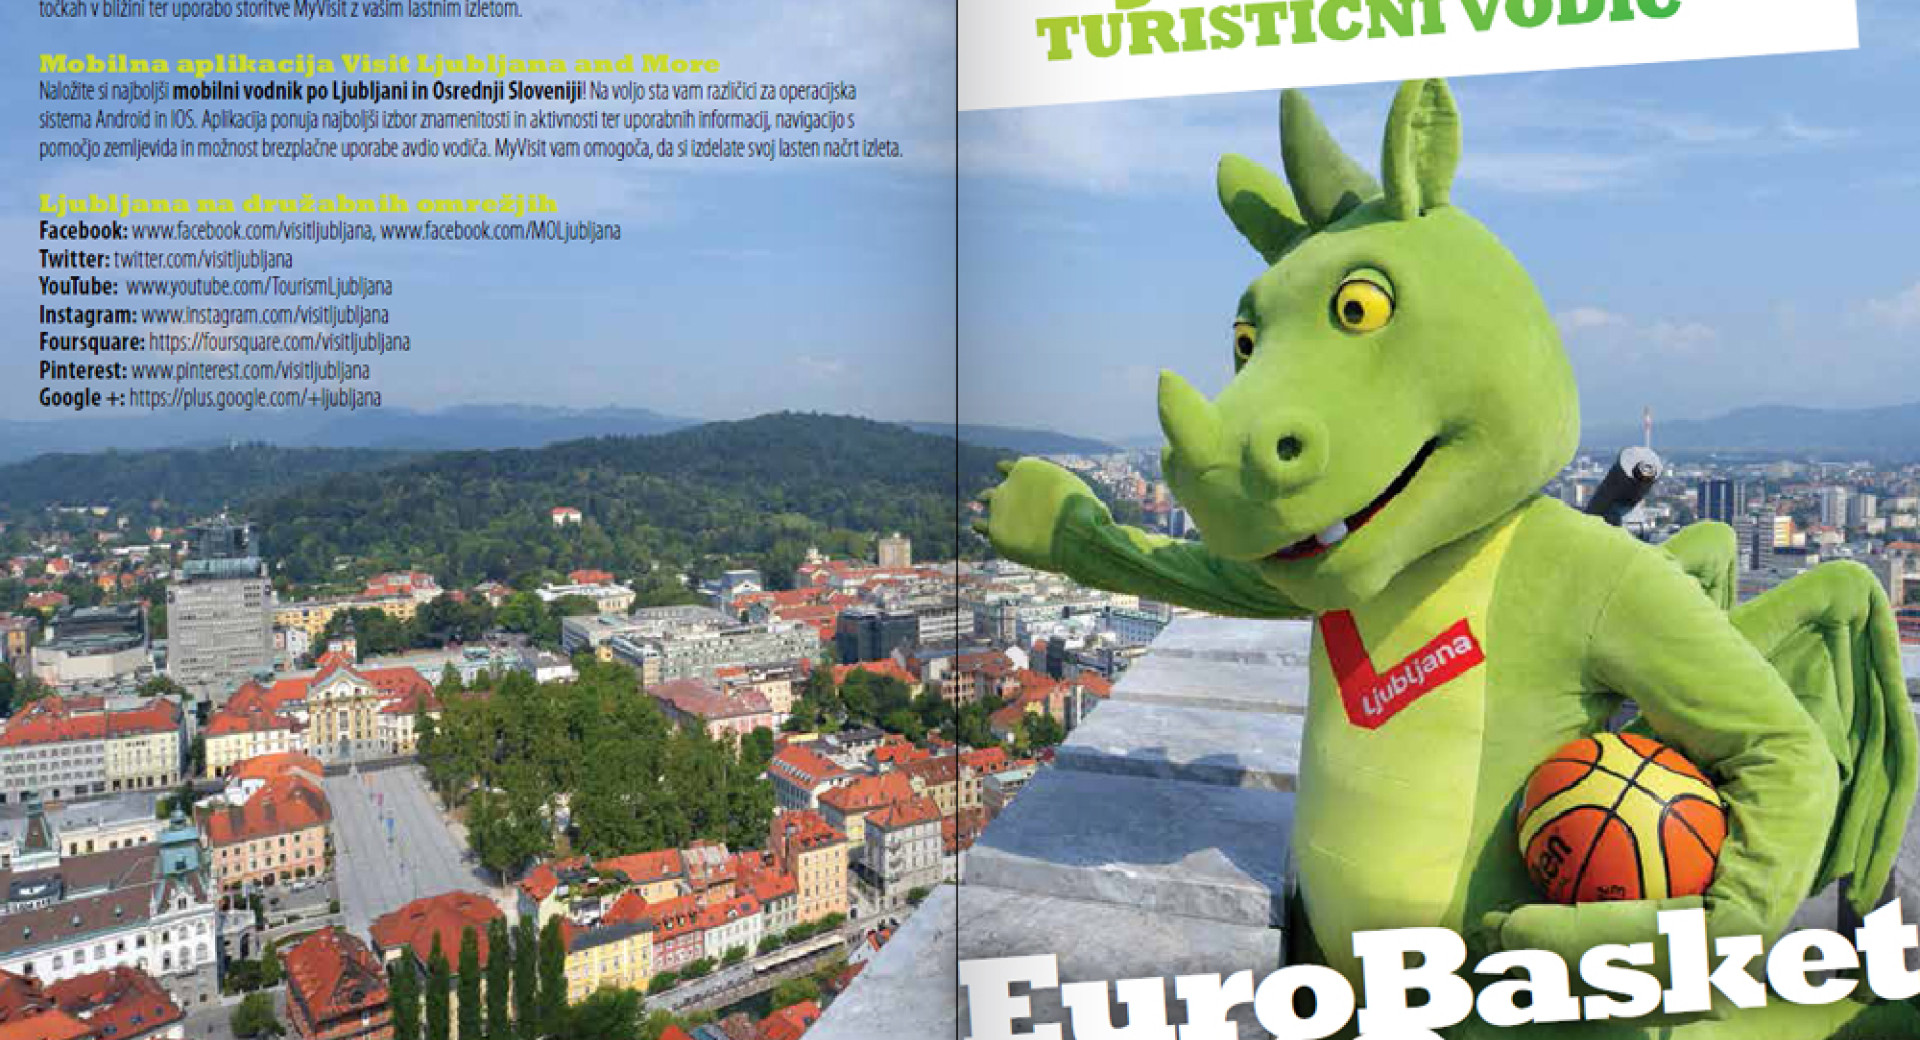 Pred prvenstvom izide pregleden turistični vodič – Ljubljana in EuroBasket 2013